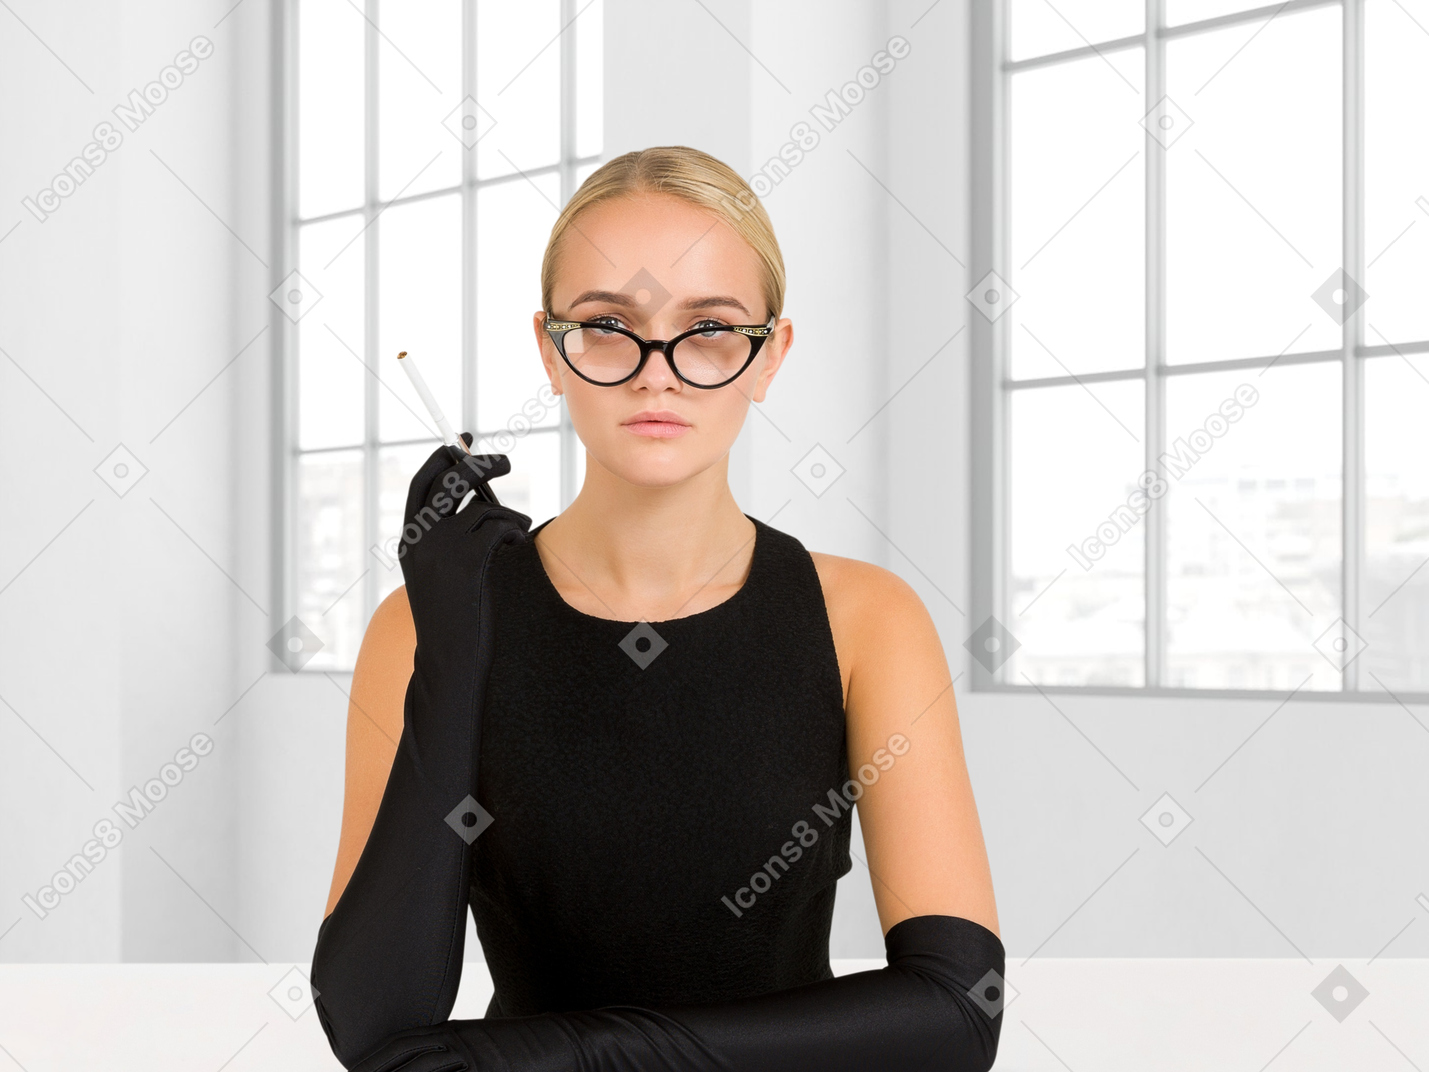 Mujer de aspecto estricto sentada y fumando un cigarrillo